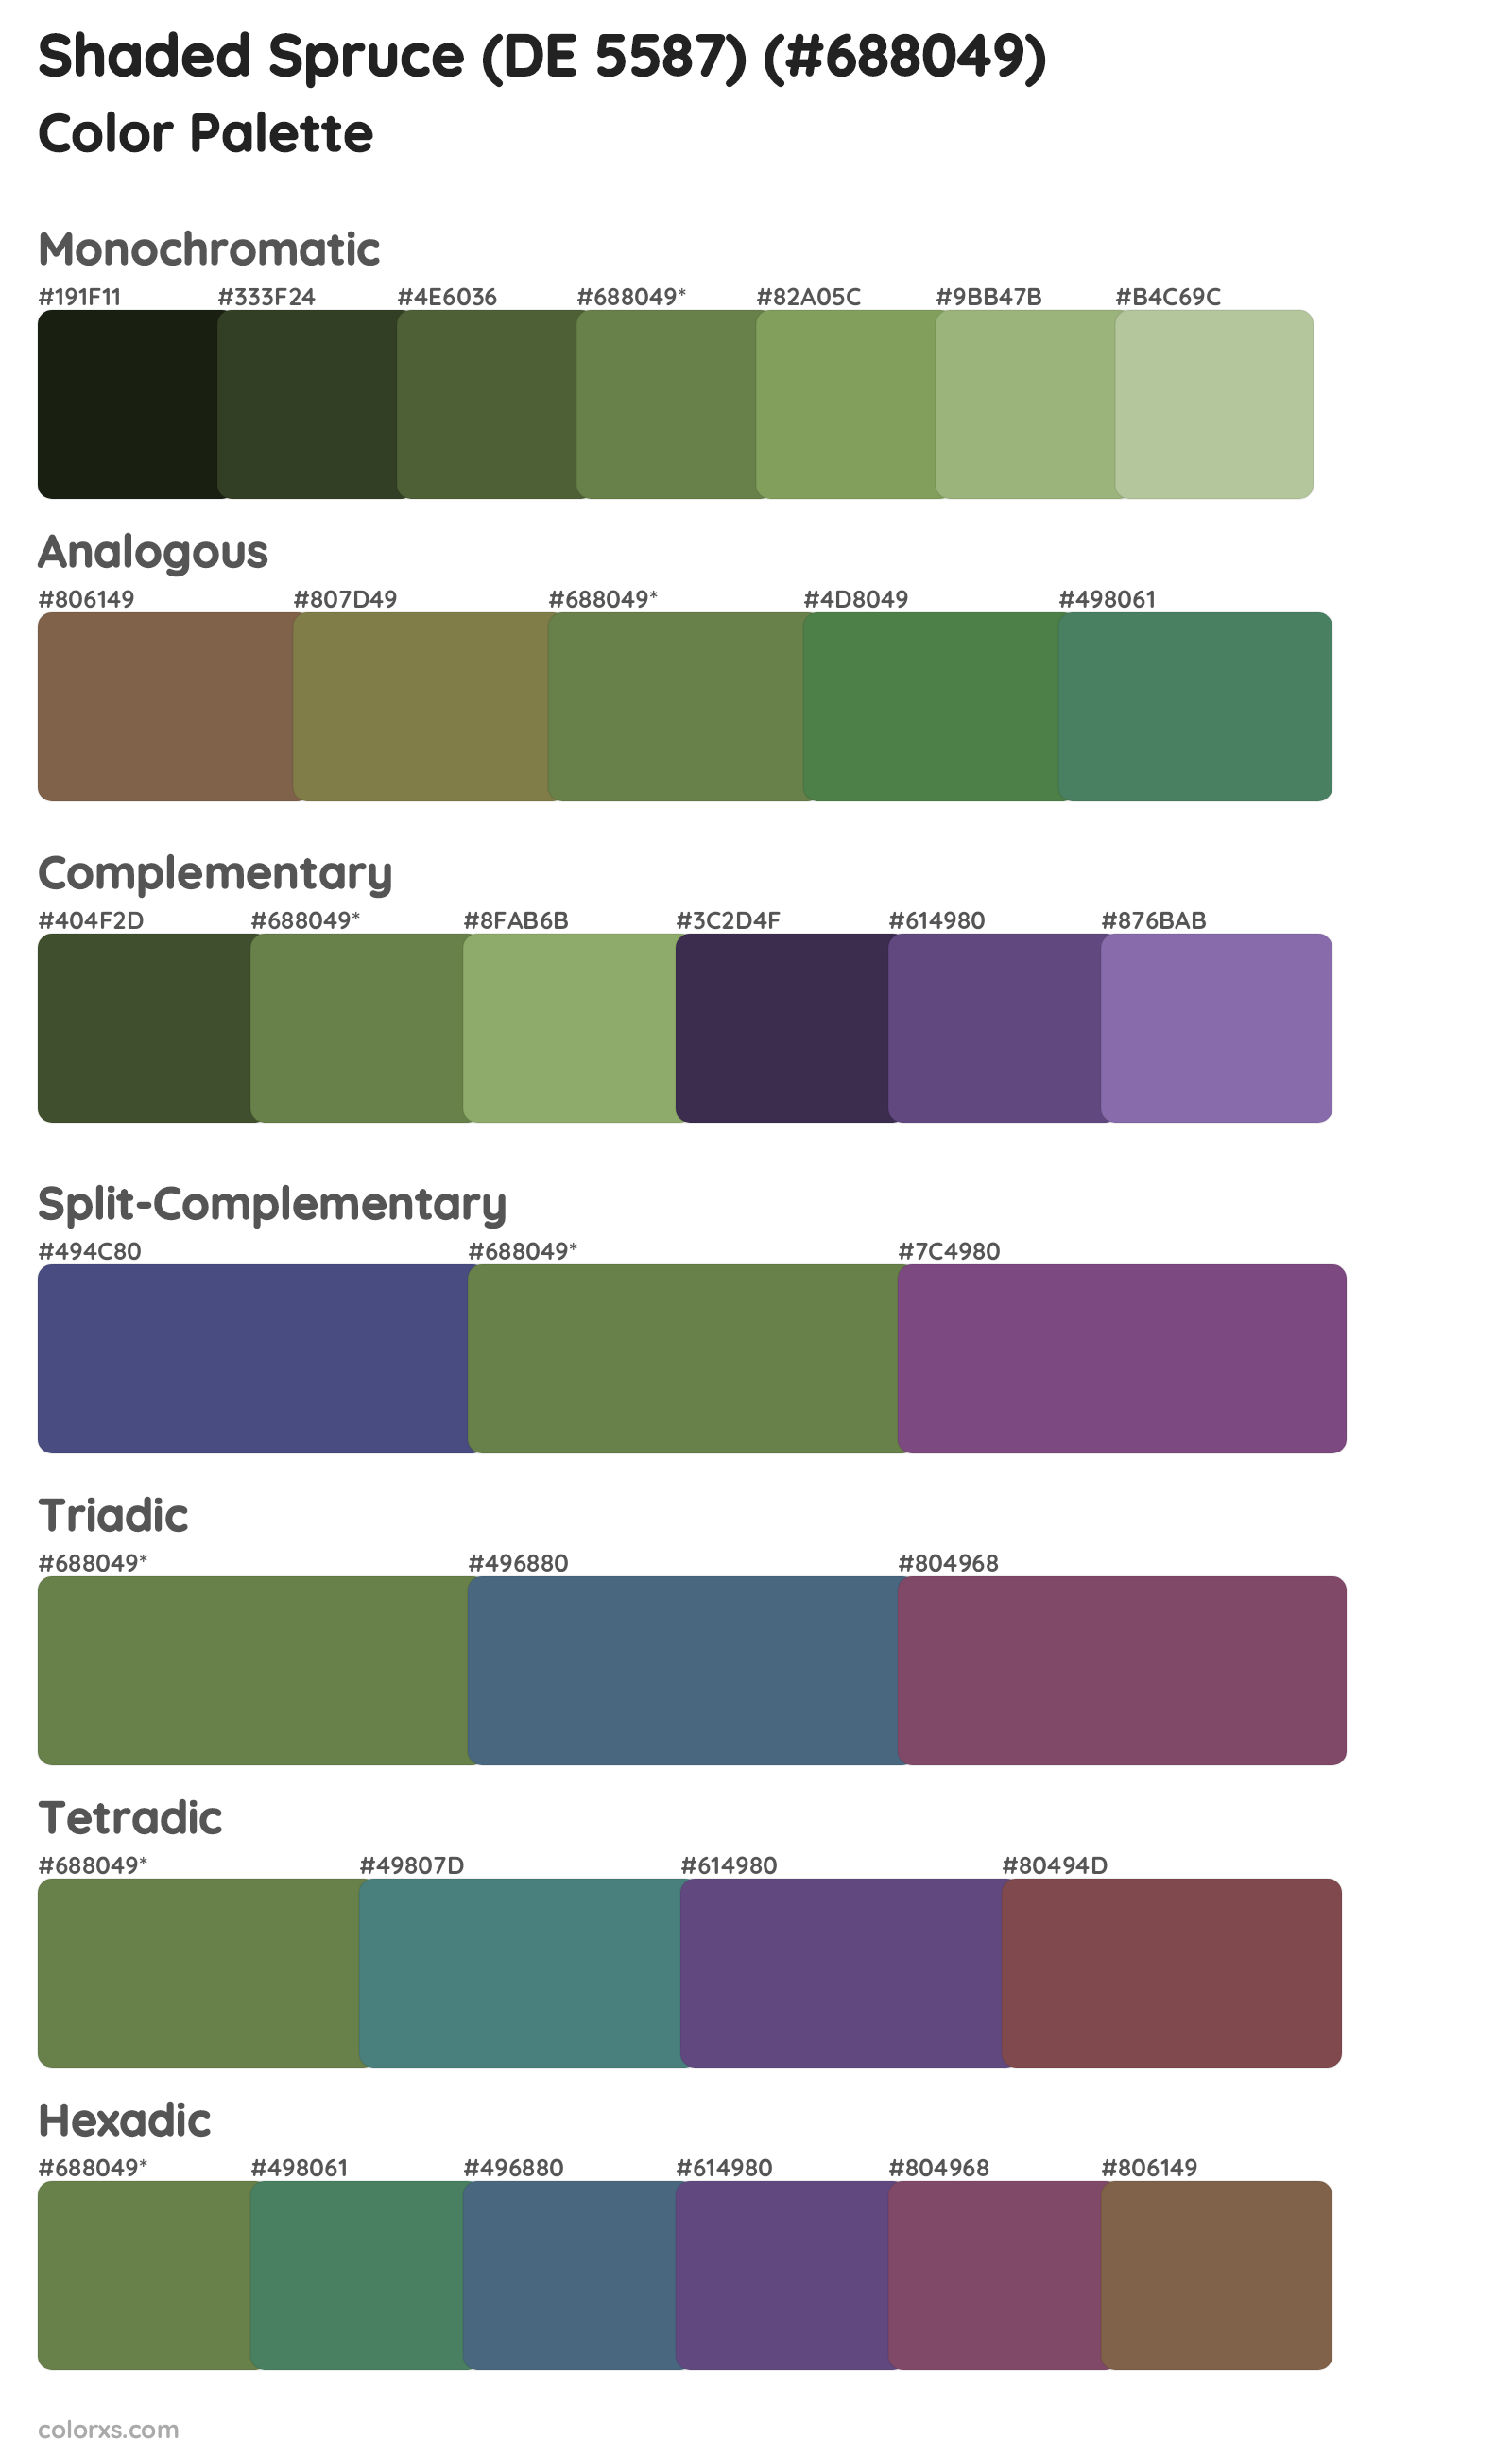 Shaded Spruce (DE 5587) Color Scheme Palettes